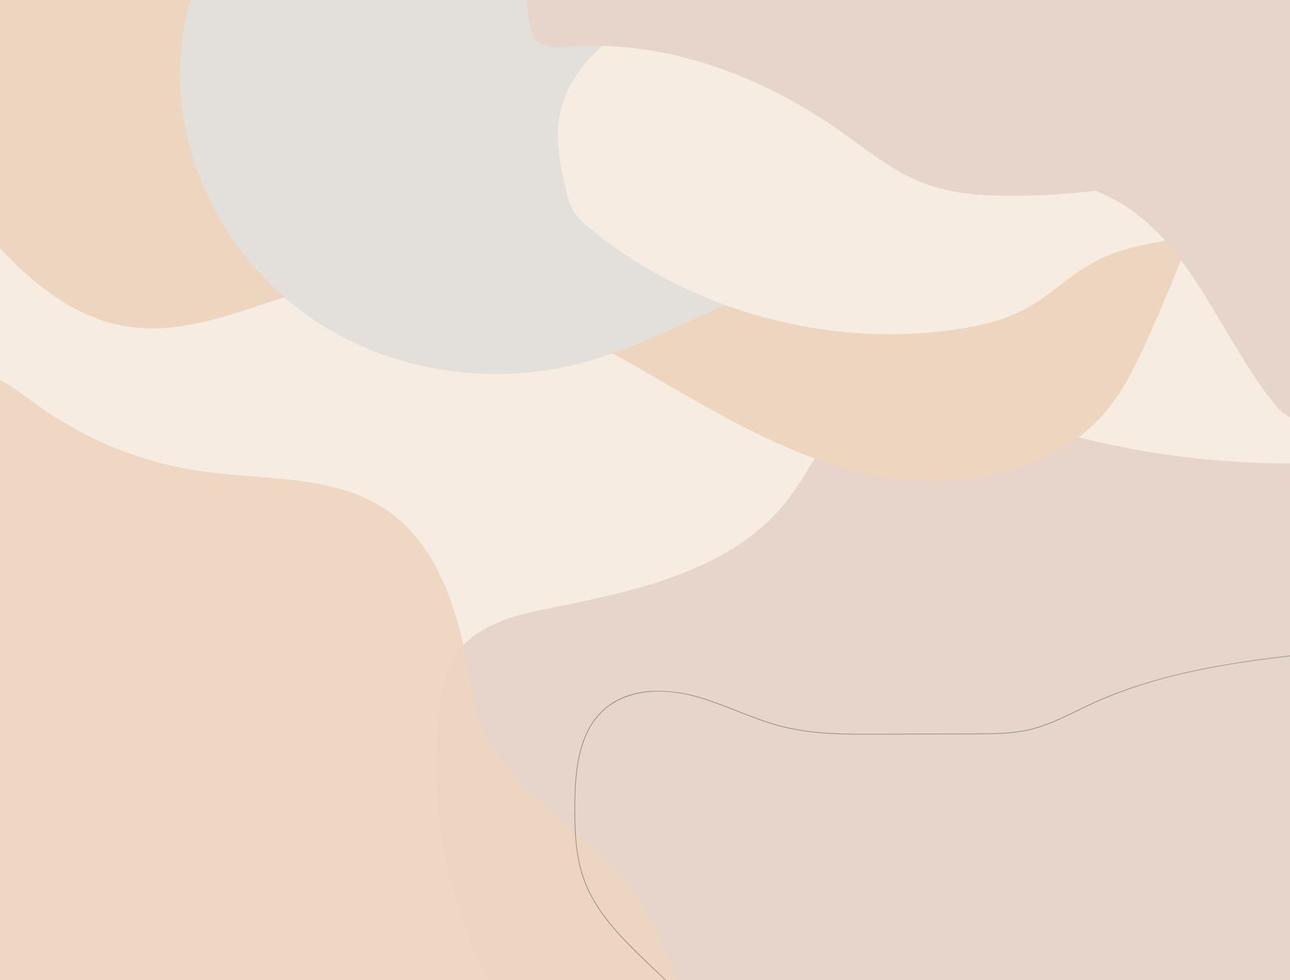 plantillas de formas elegantes de color pastel con curvas y líneas abstractas para plantillas de colores pastel, fondo neutro en estilo minimalista, vector e ilustración